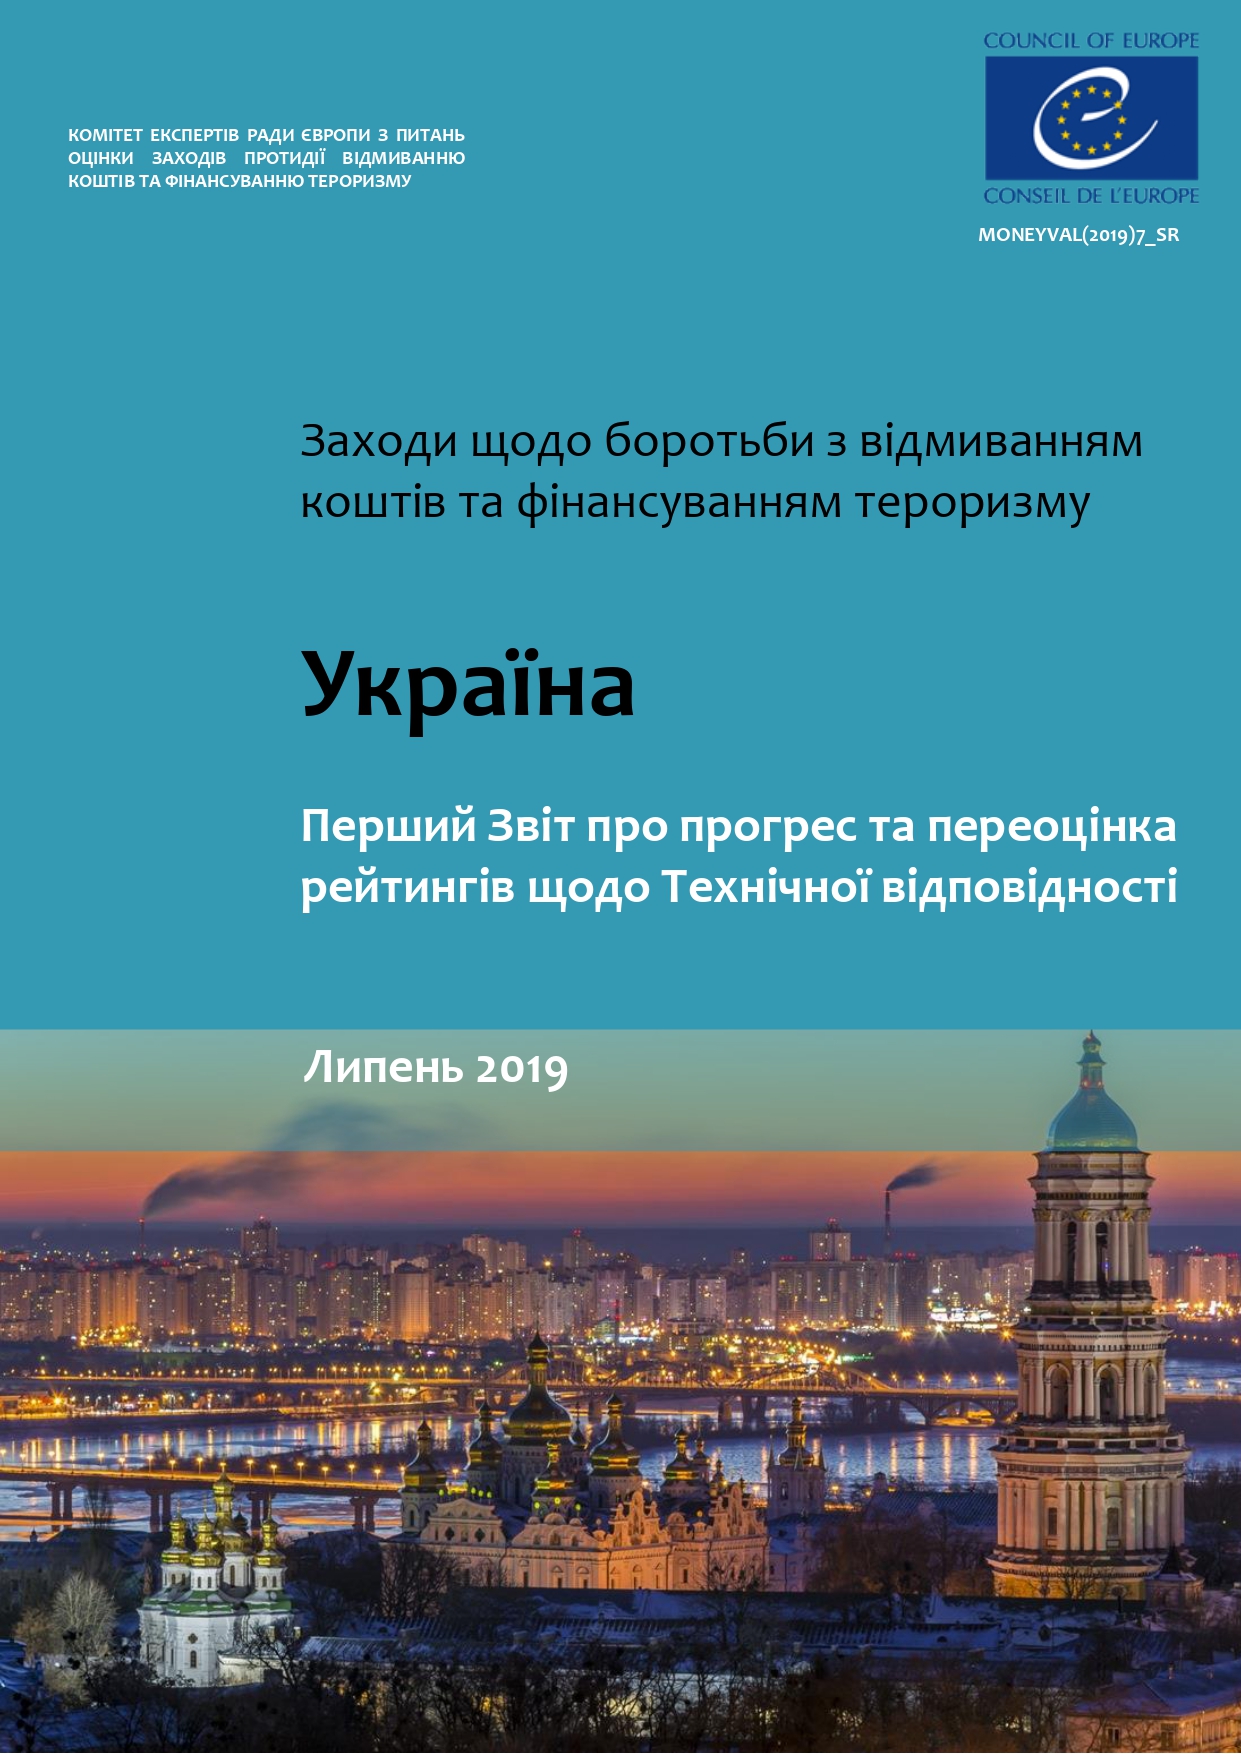 Перший Звіт про прогрес за результатами п’ятого раунду взаємної оцінки України Комітетом MONEYVAL